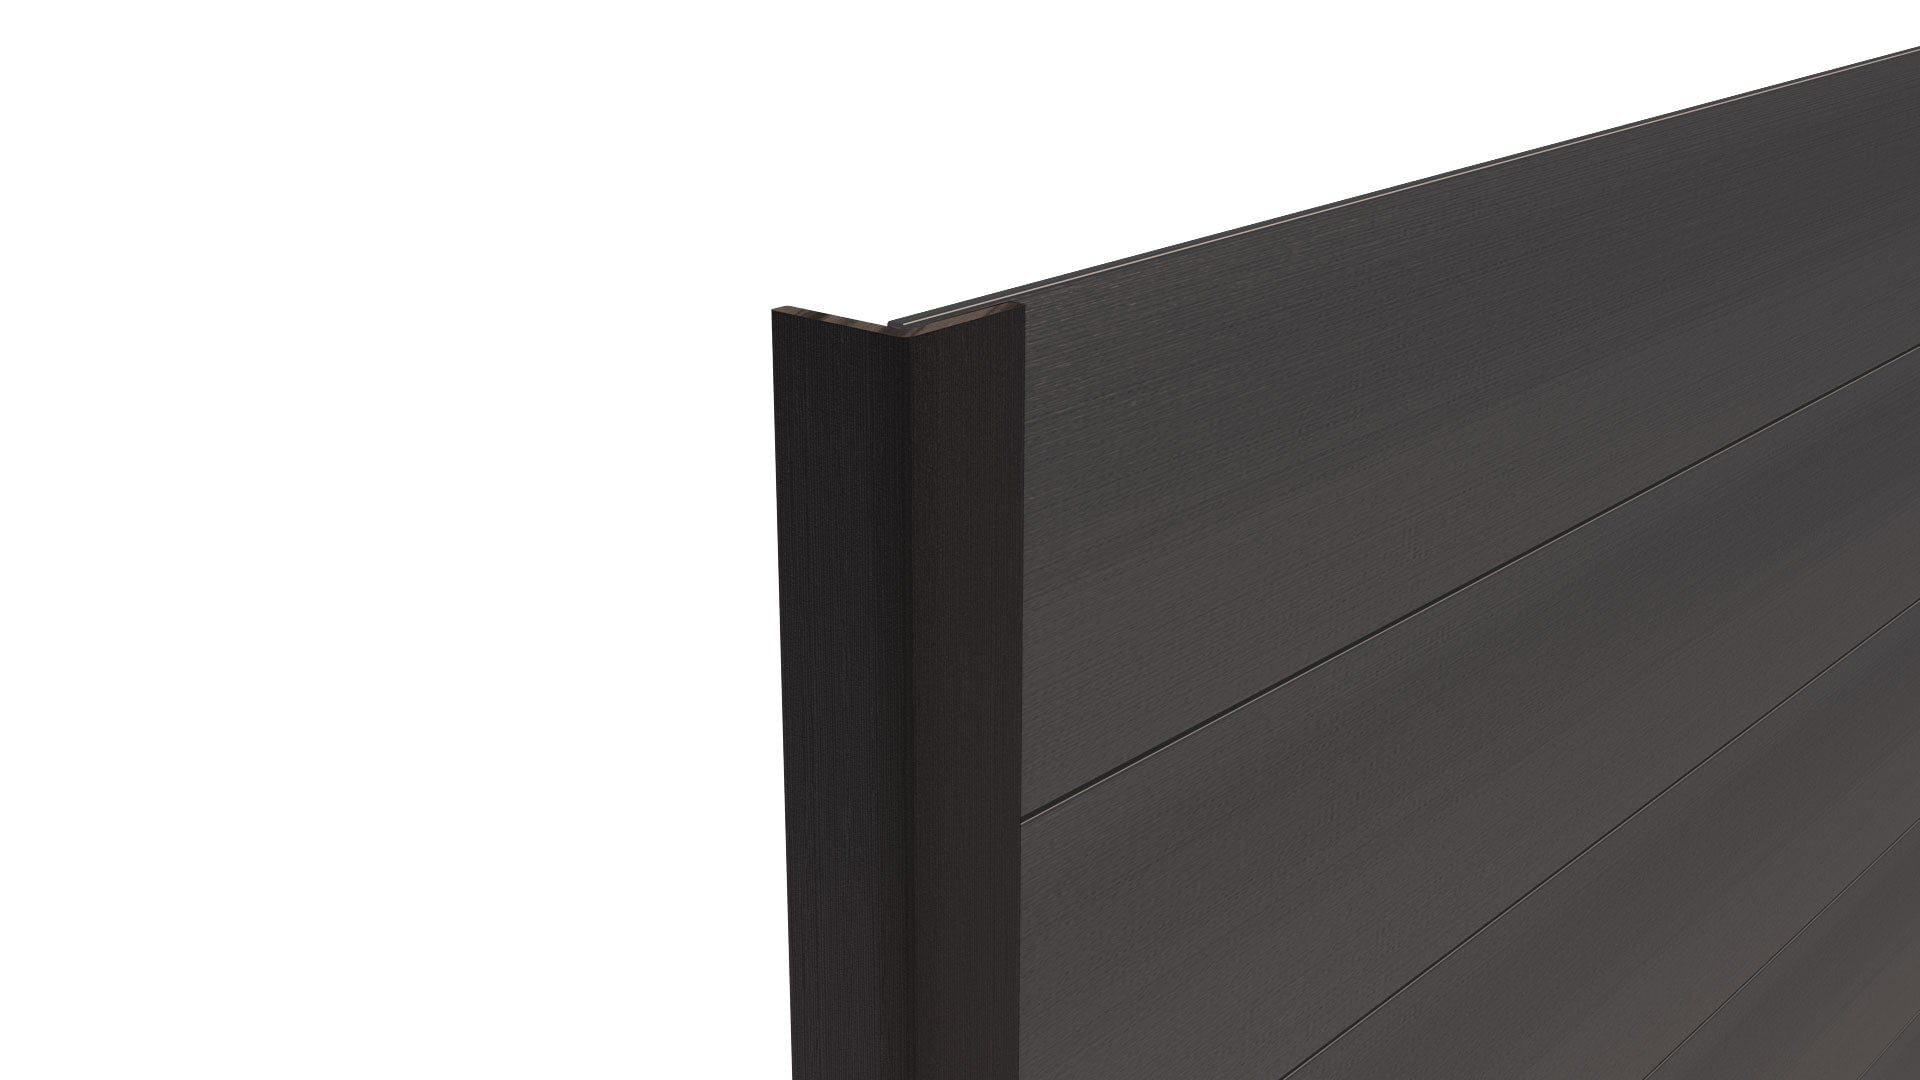 Composite Panel Cladding Angled Trim (3m length) | Black